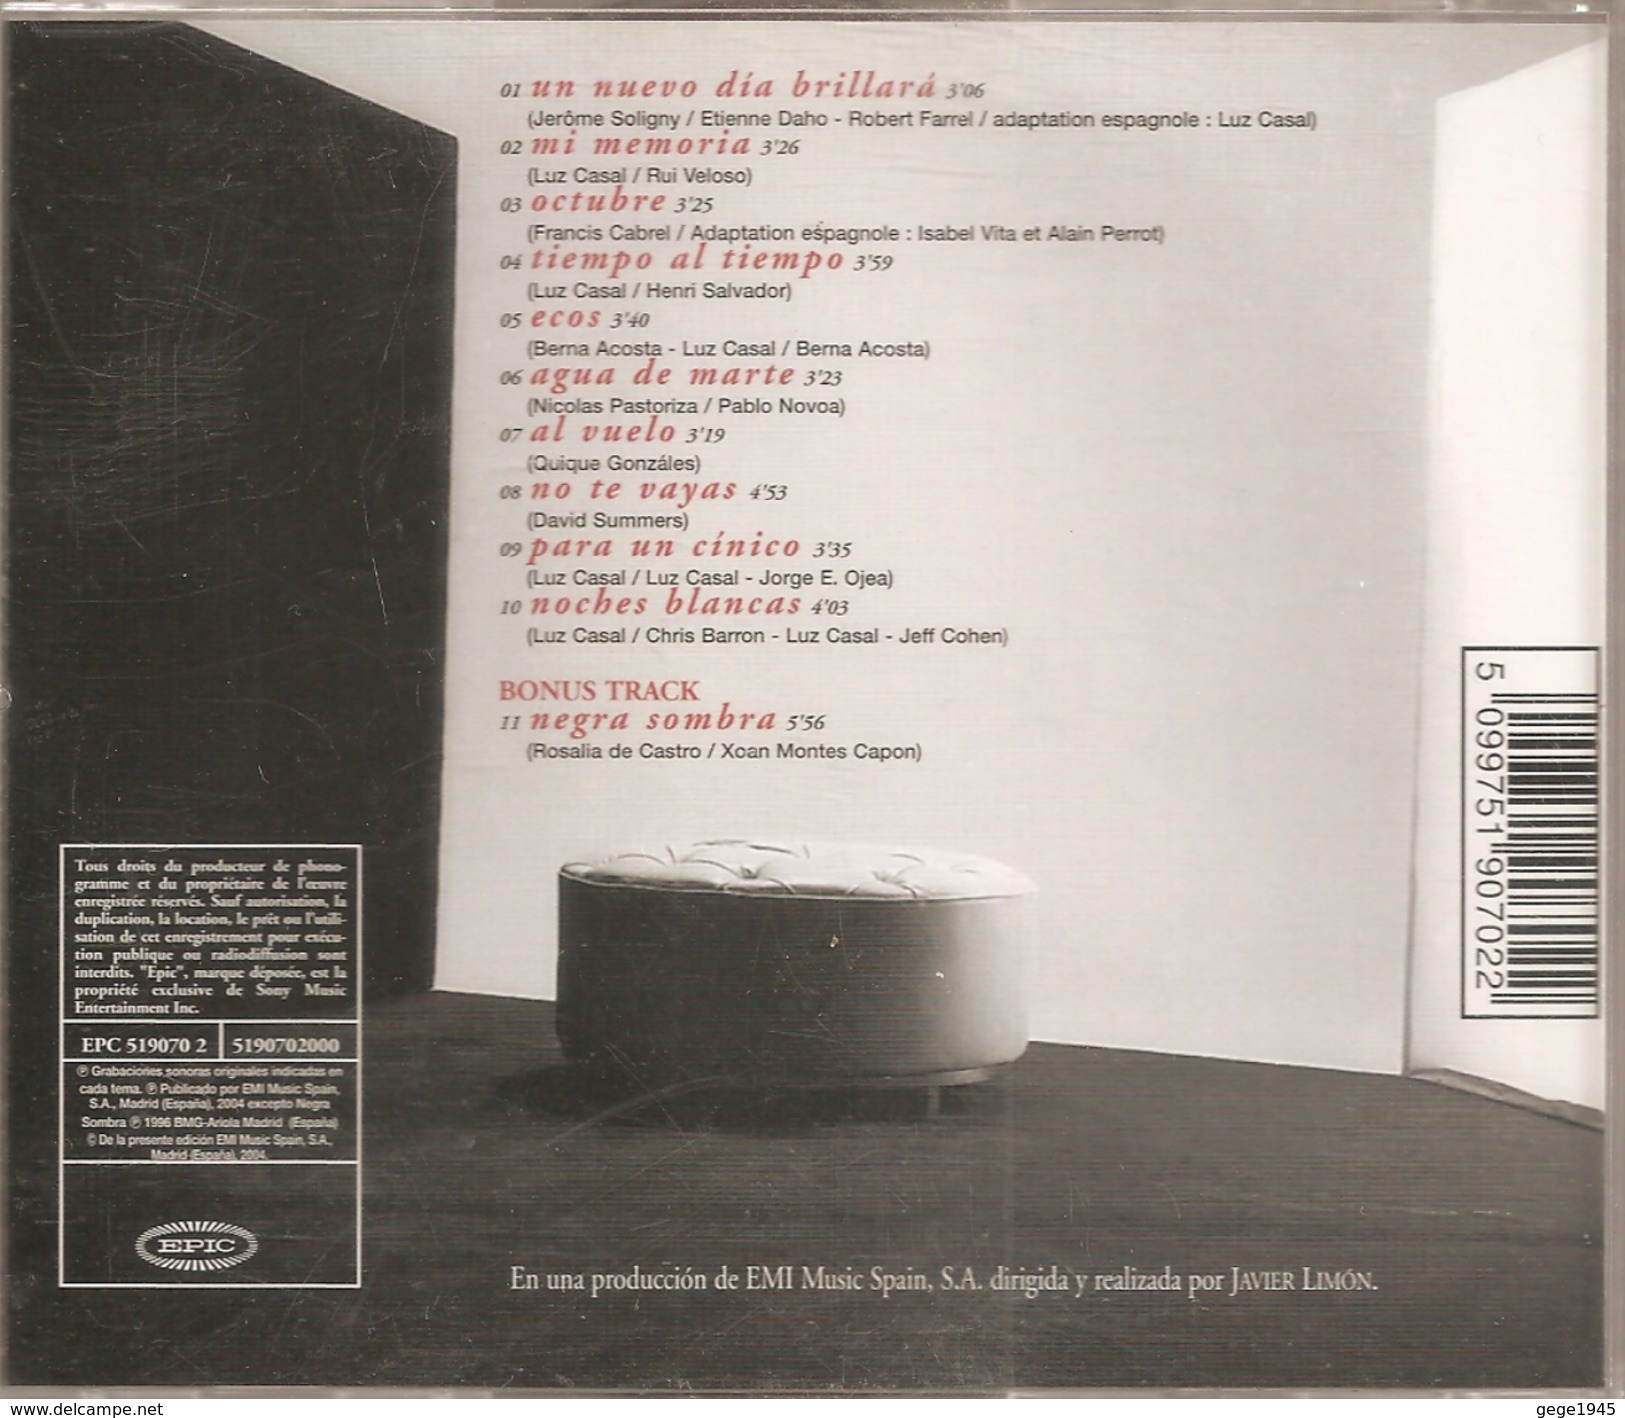 CD  Luz Casal  "  Sencilla  Alegria  "  De  2004  Avec  11  Titres - Andere - Spaans